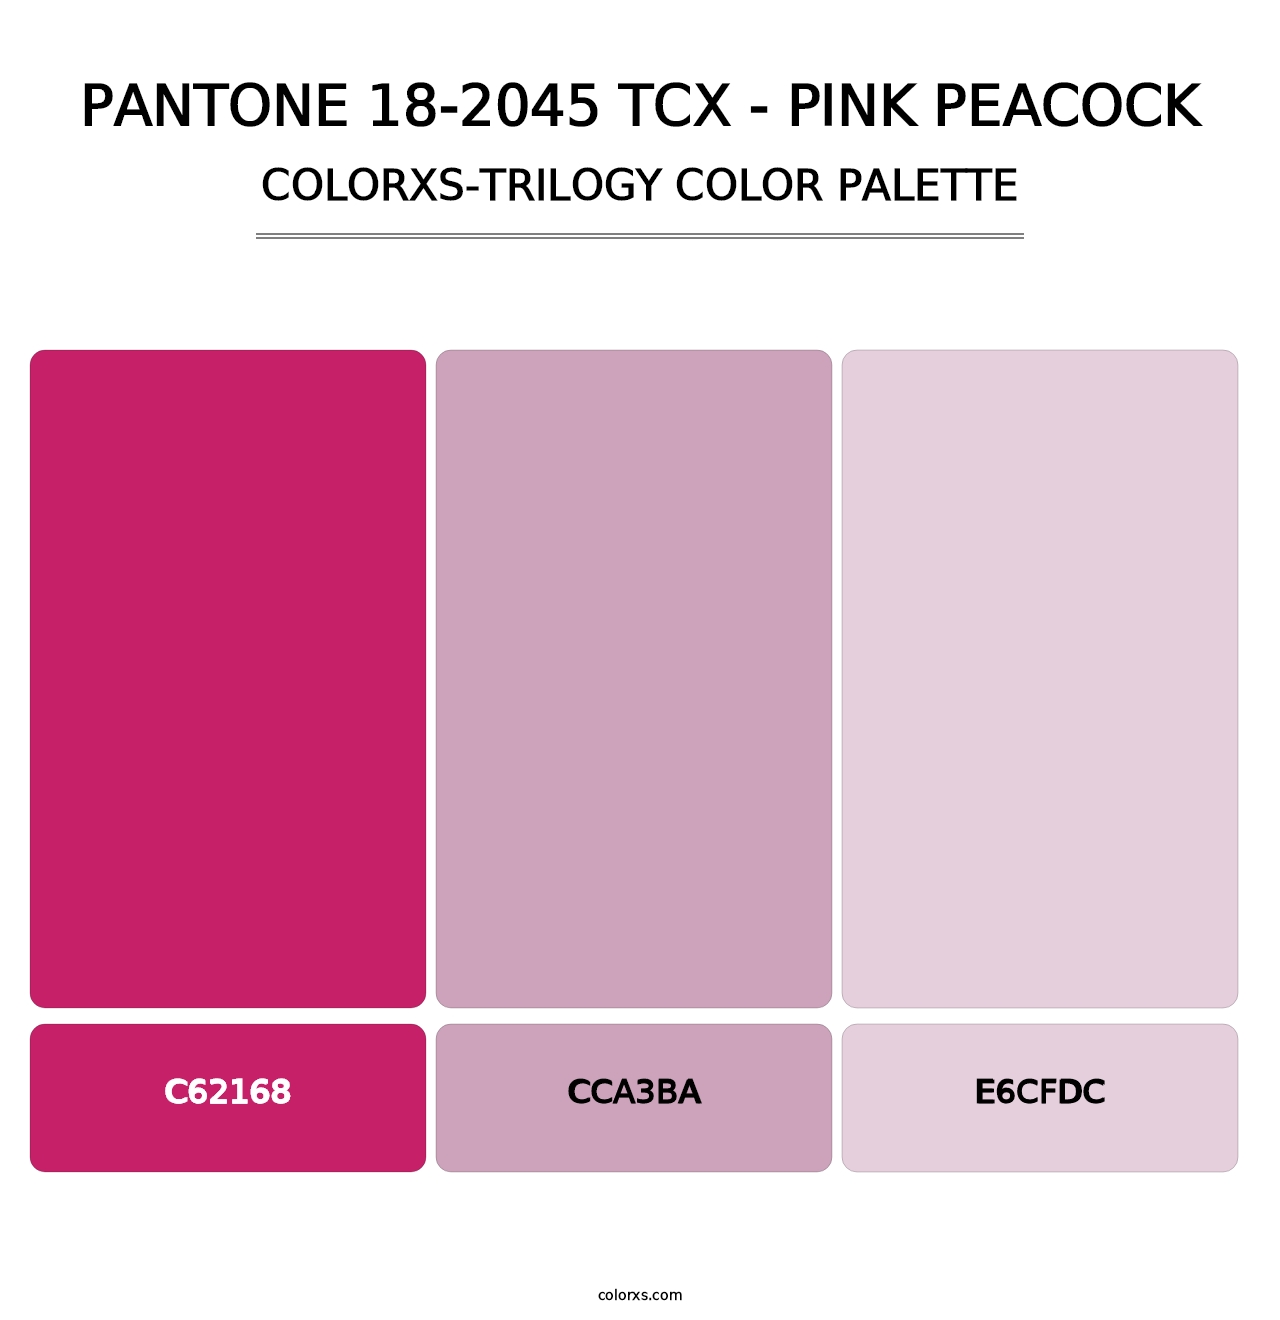 PANTONE 18-2045 TCX - Pink Peacock - Colorxs Trilogy Palette